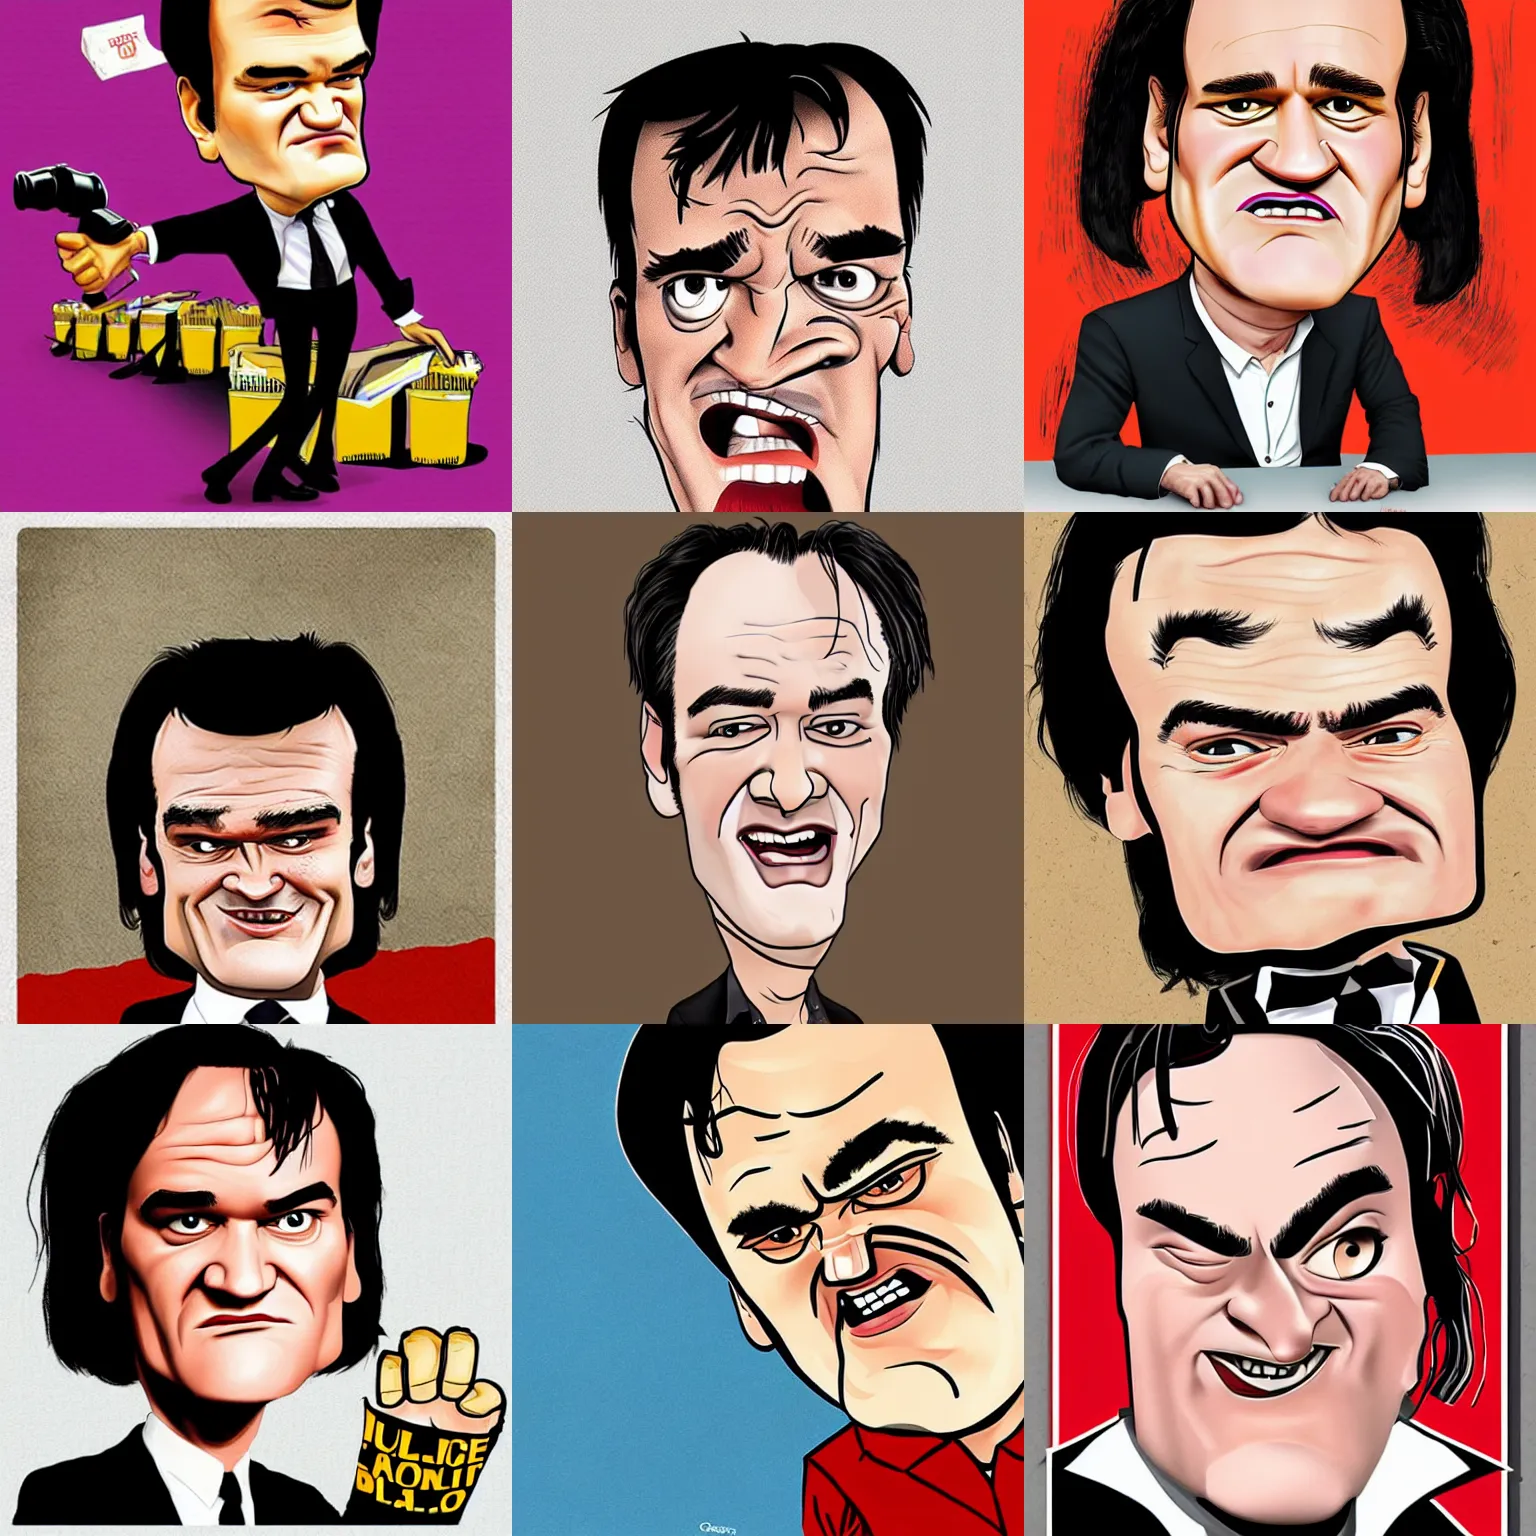 Prompt: Quentin Tarantino caricature